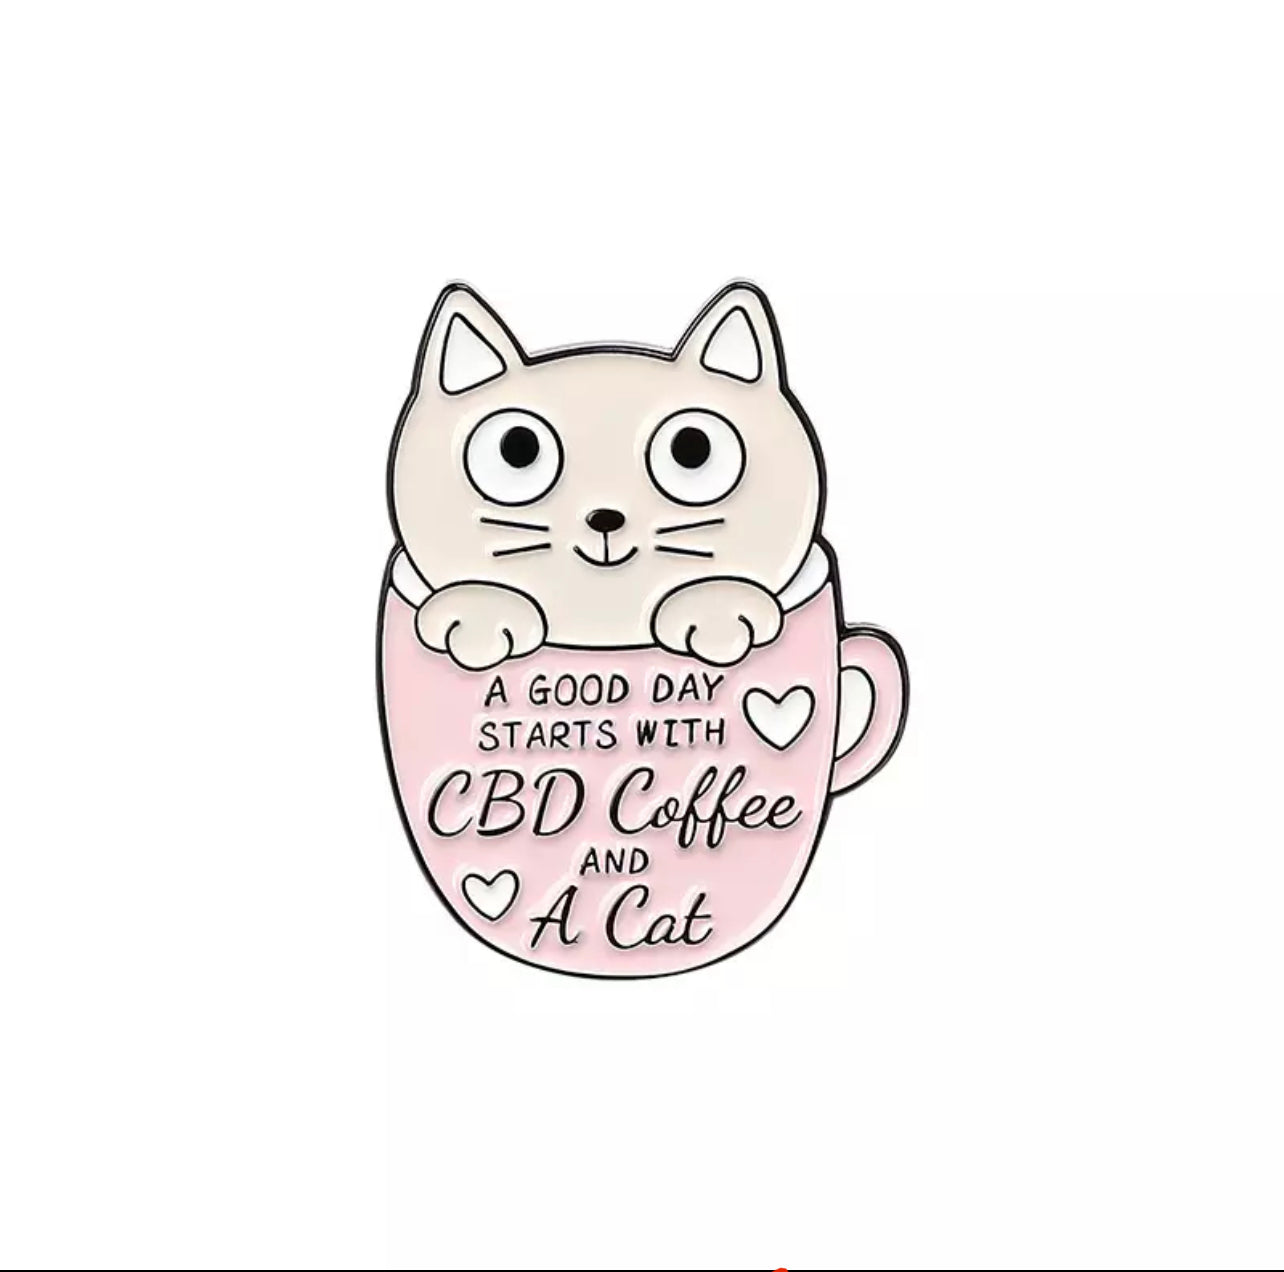 CBD coffee